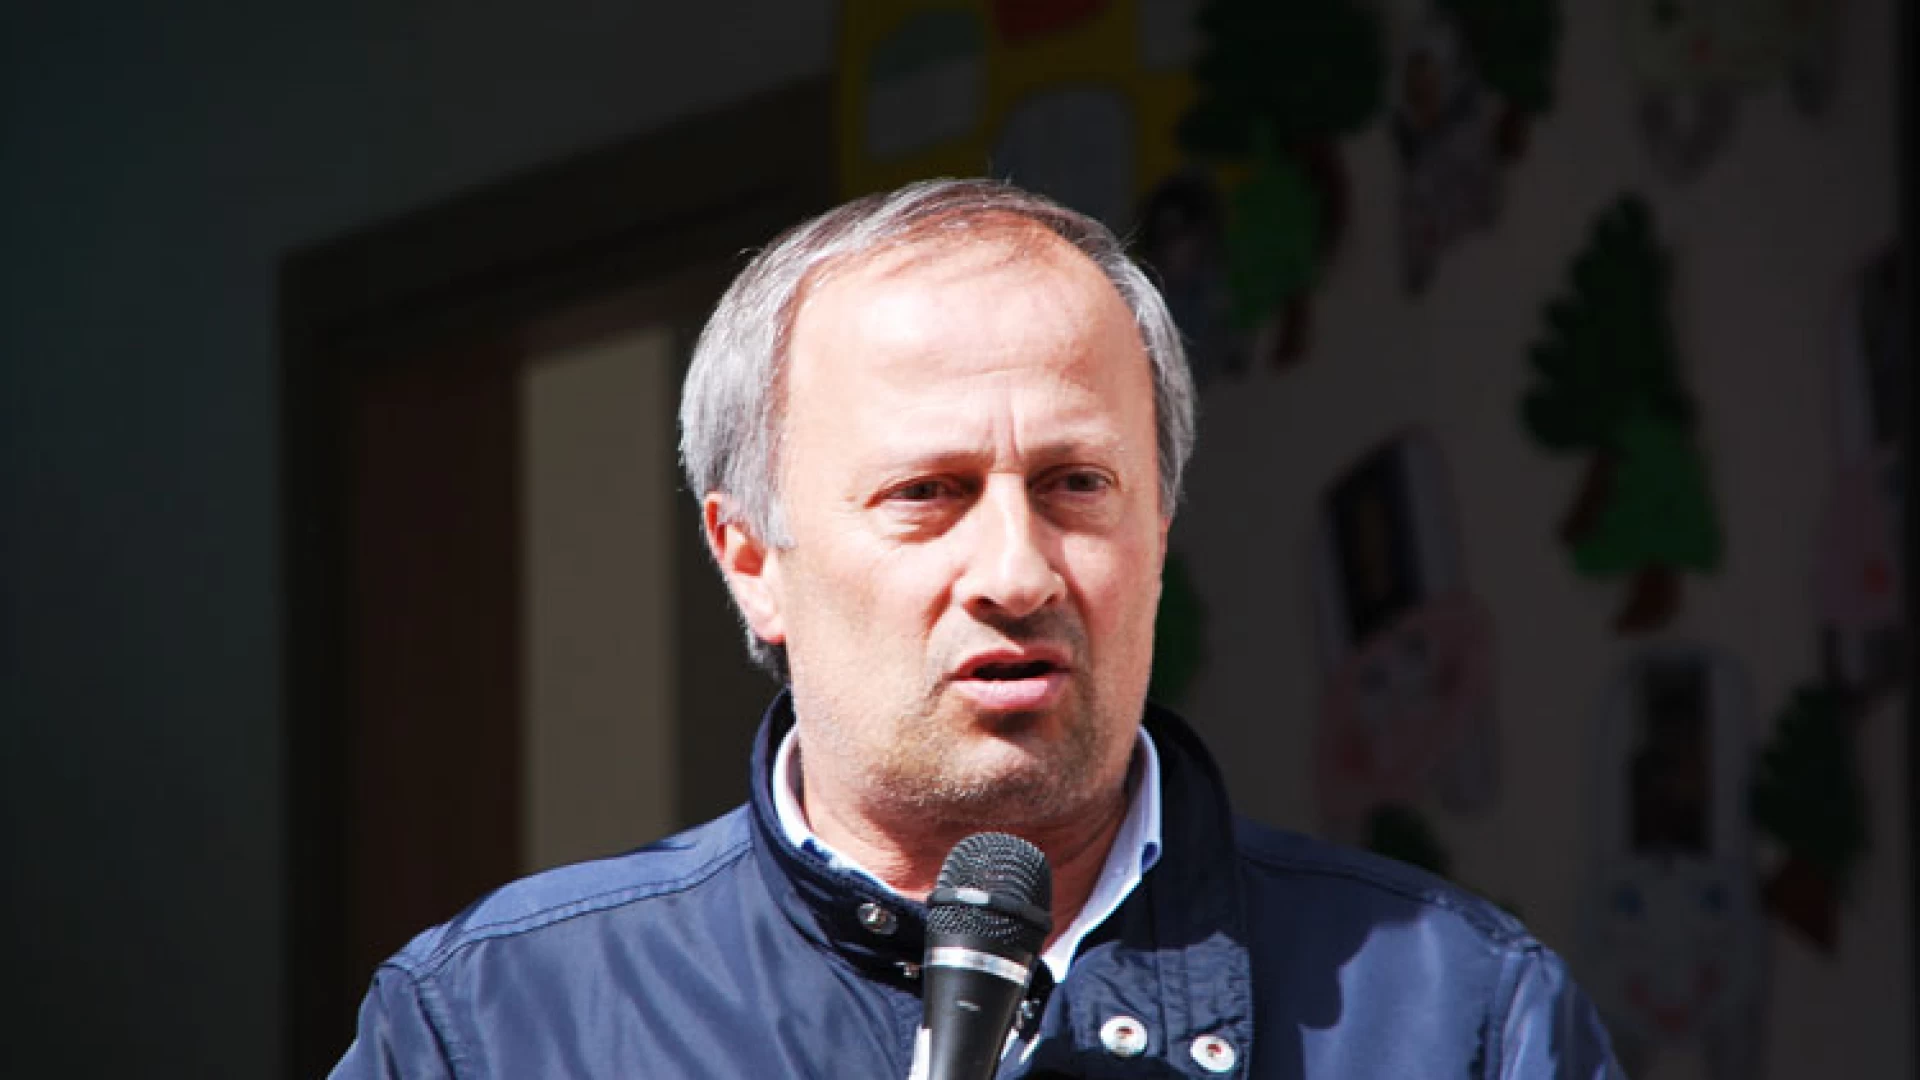 Il sindaco di Capracotta, Candido Paglione, risponde all’ex sindaco che lo accusa di ritardare l’apertura delle piste da sci.